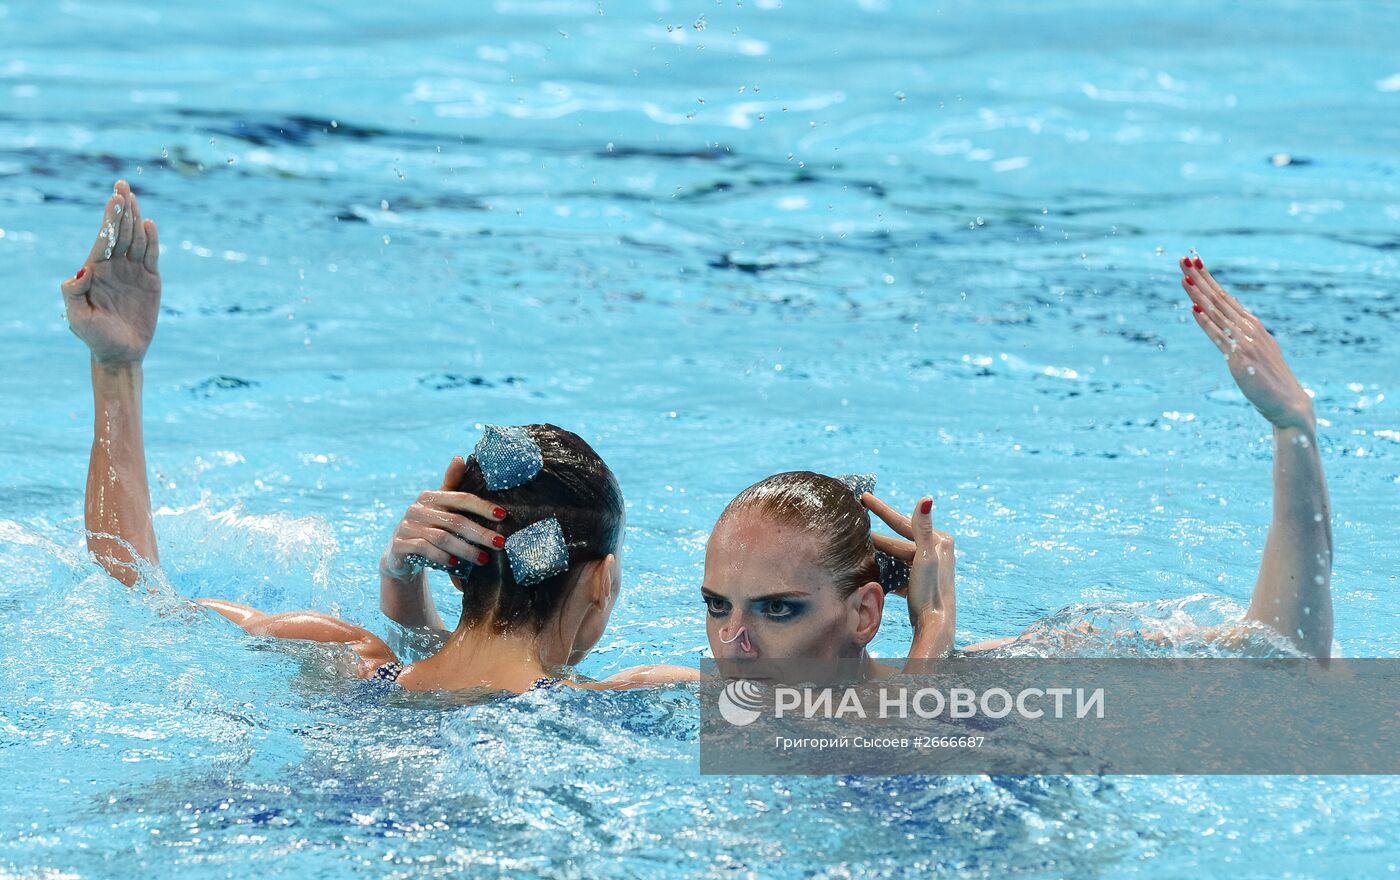 Чемпионат мира FINA 2015. Синхронное плавание. Дуэты. Произвольная программа. Предварительный раунд